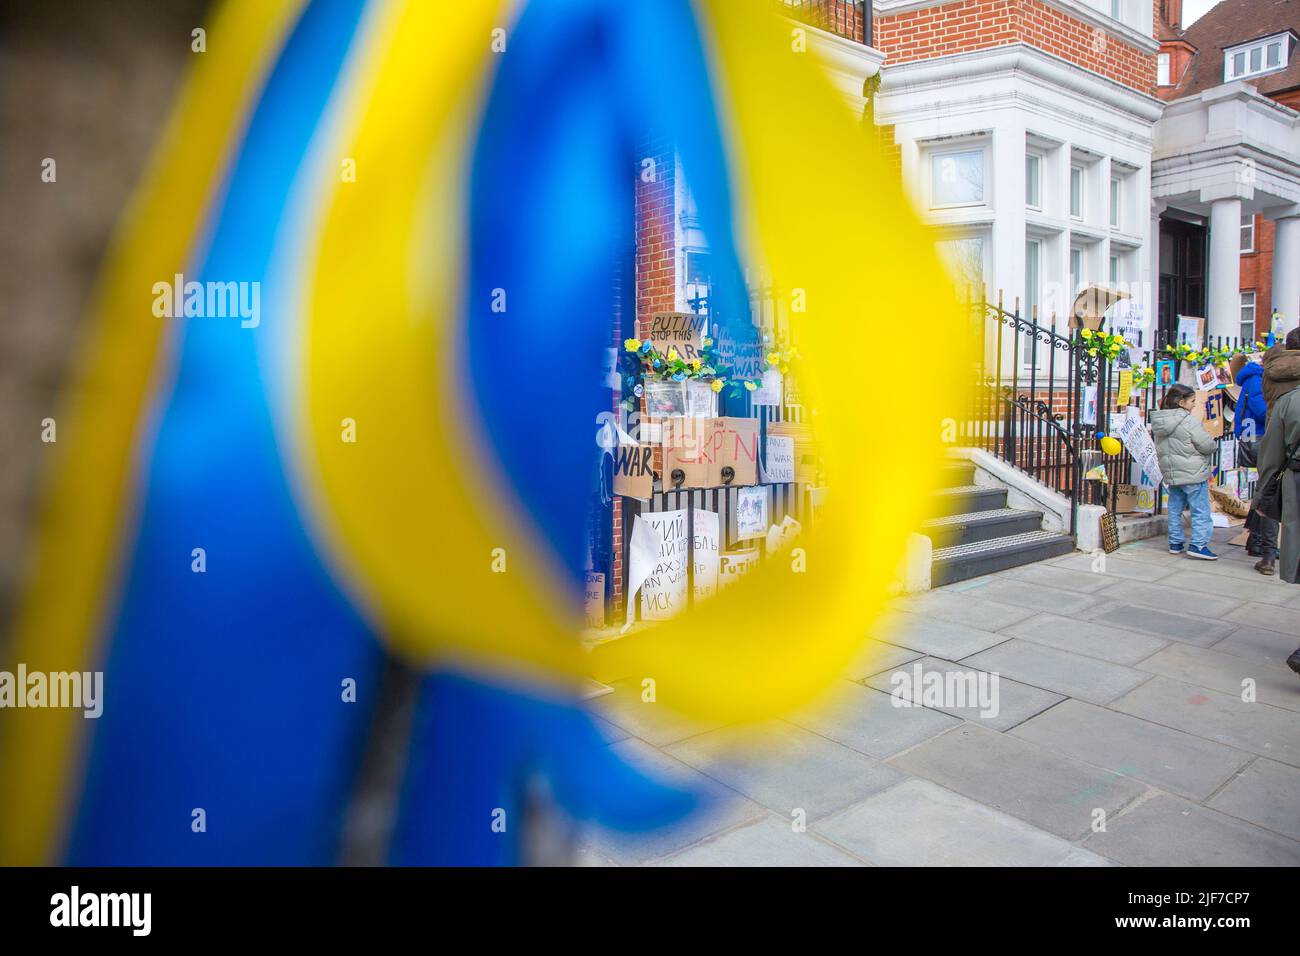 Derrière des rubans bleus et jaunes attachés à un arbre, des messages et des affiches contre l’invasion de l’Ukraine par la Russie sont laissés près de l’ambassade de Russie à Londres. Banque D'Images